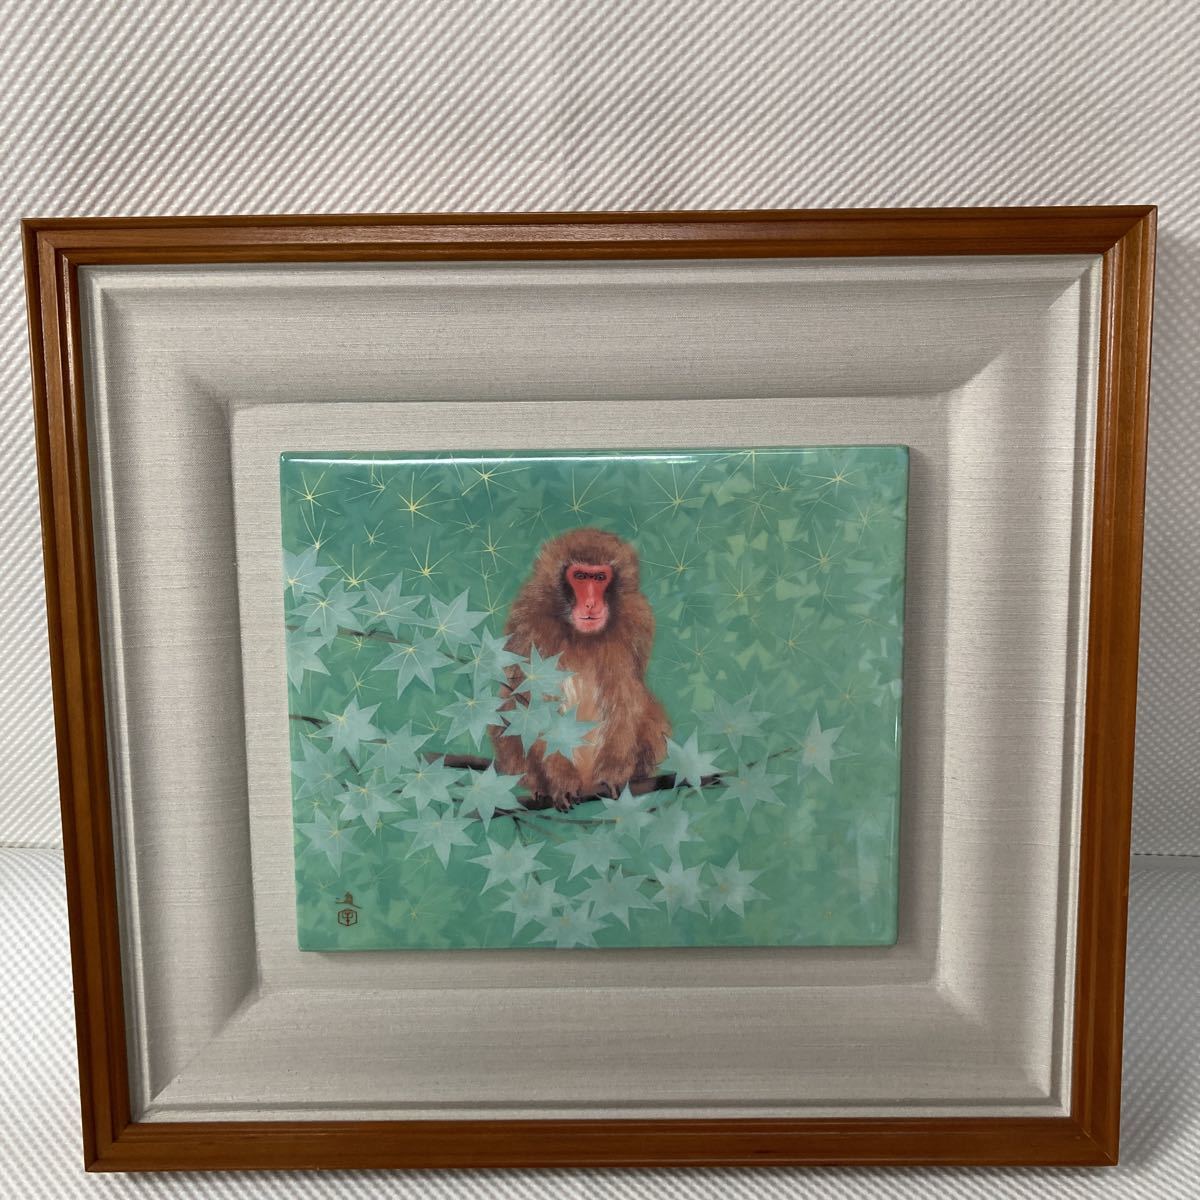 माकी सुसुमु राशि चक्र बंदर माहेता मिट्टी के बर्तन कुयामा भट्ठा चित्र फ़्रेम सिरेमिक बोर्ड पेंटिंग पेंटिंग ललित कला जापानी पेंटिंग पशु बंदर, कलाकृति, चित्रकारी, अन्य